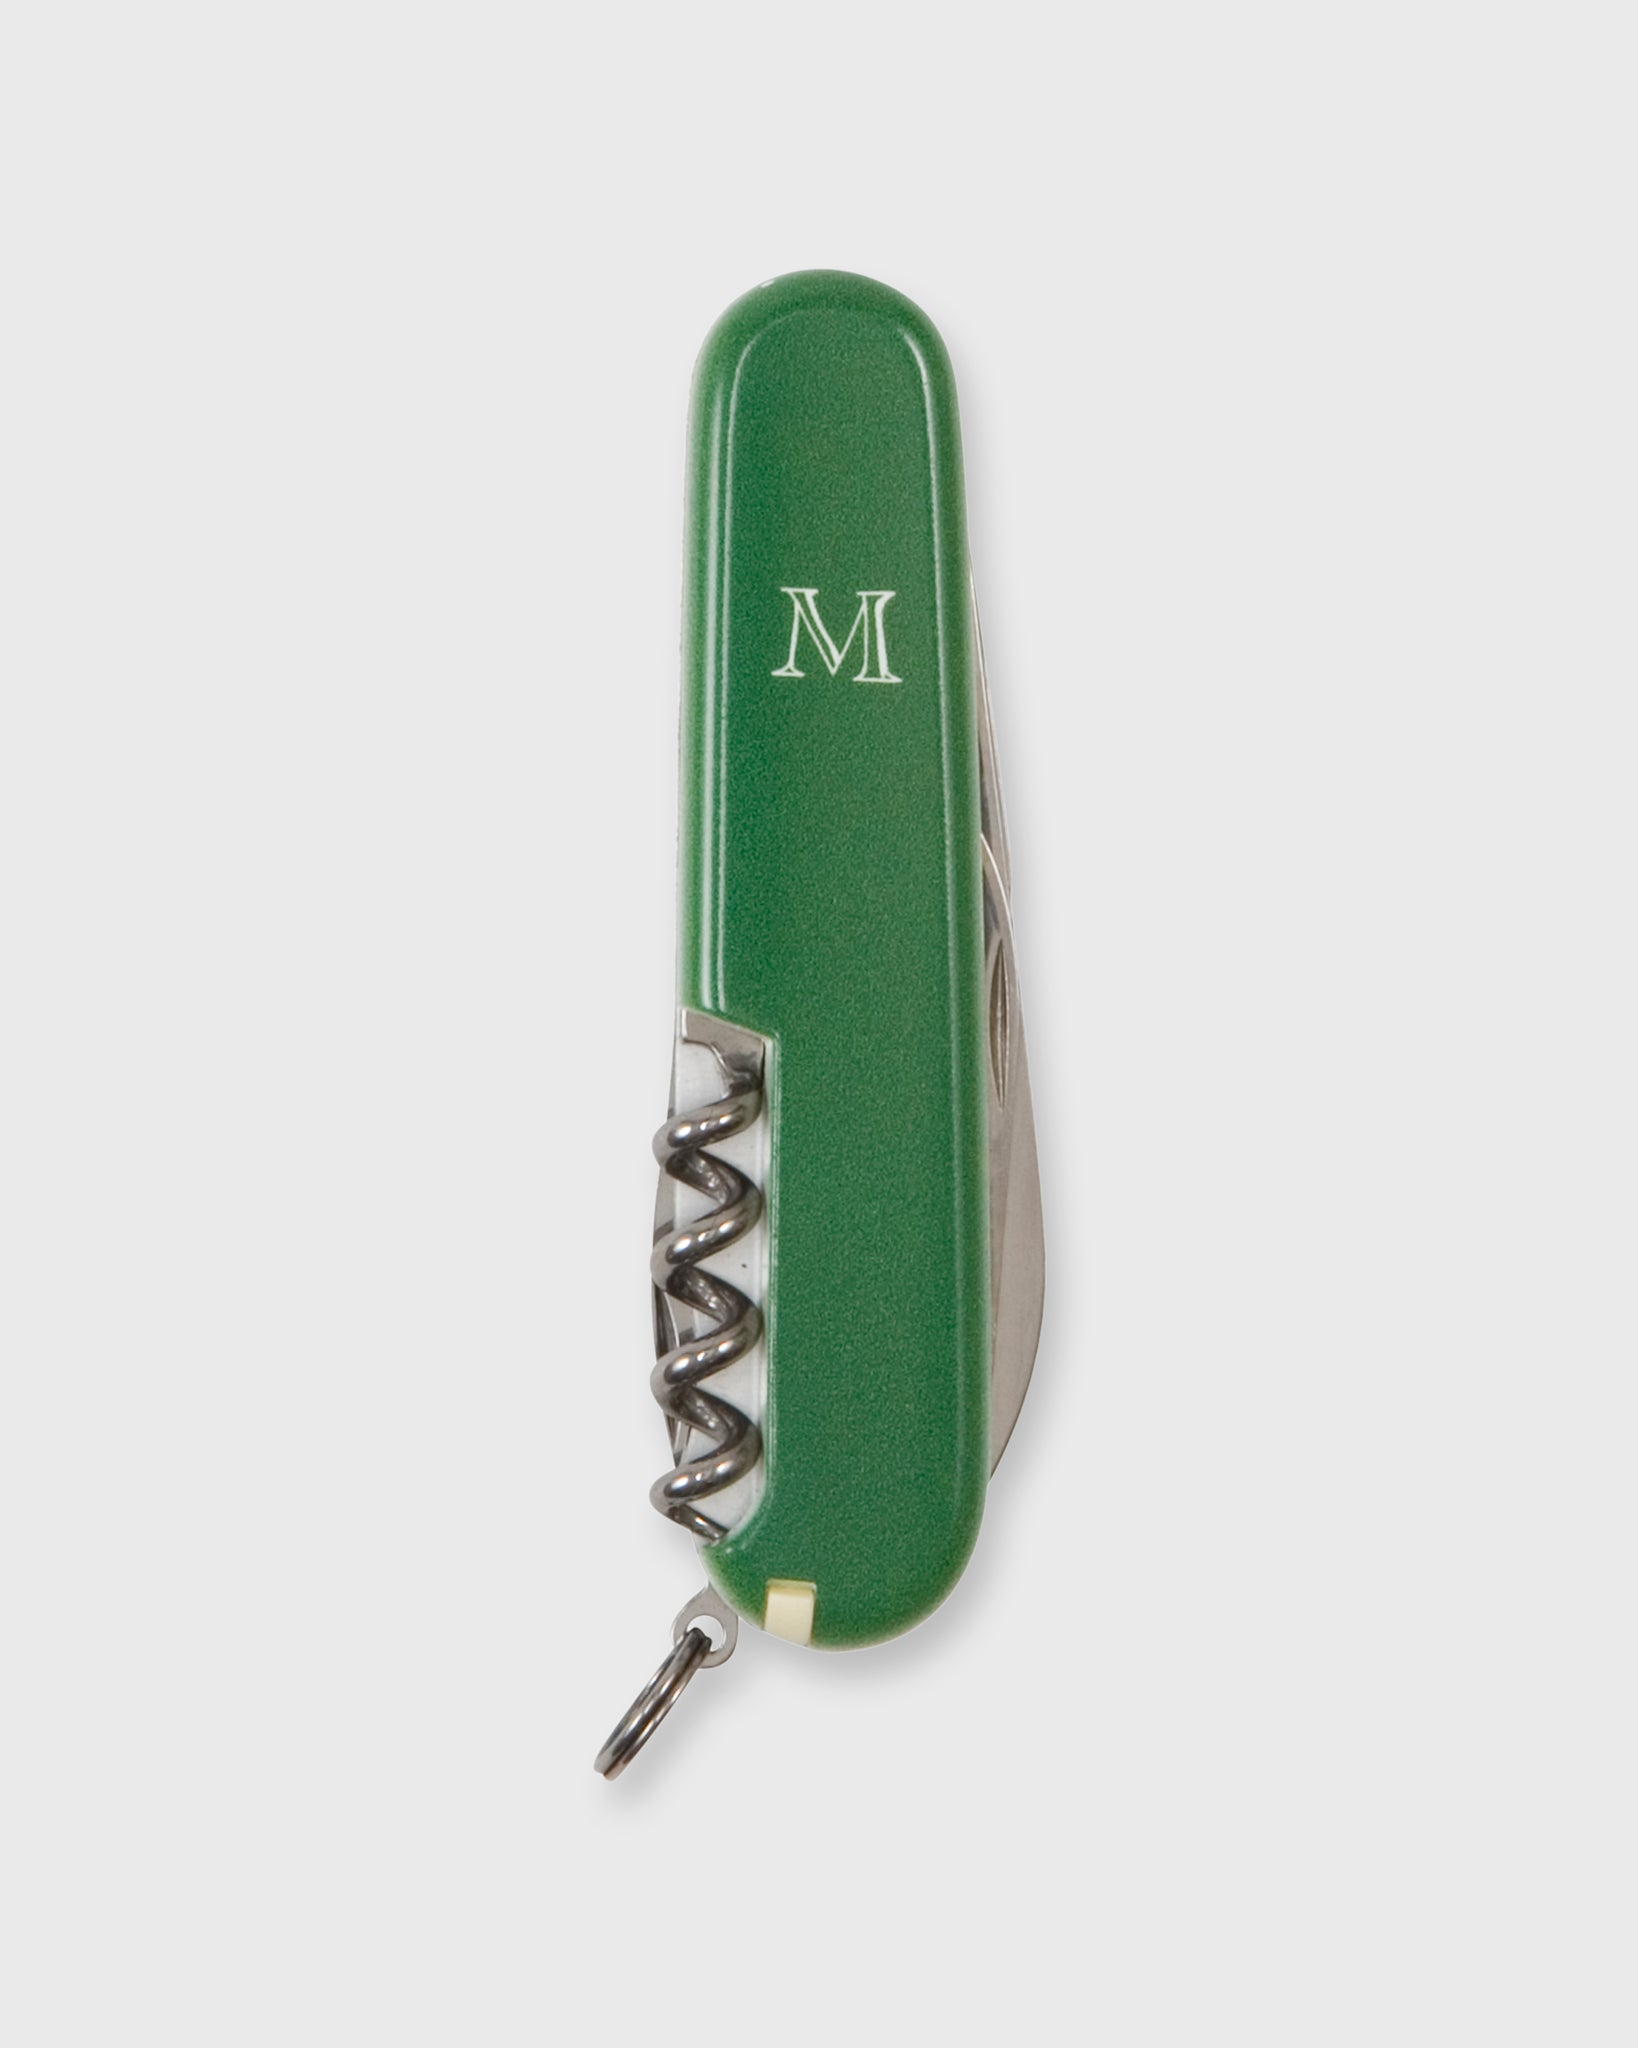 Large Swiss Army Knife in Green/White Mashburn "M"